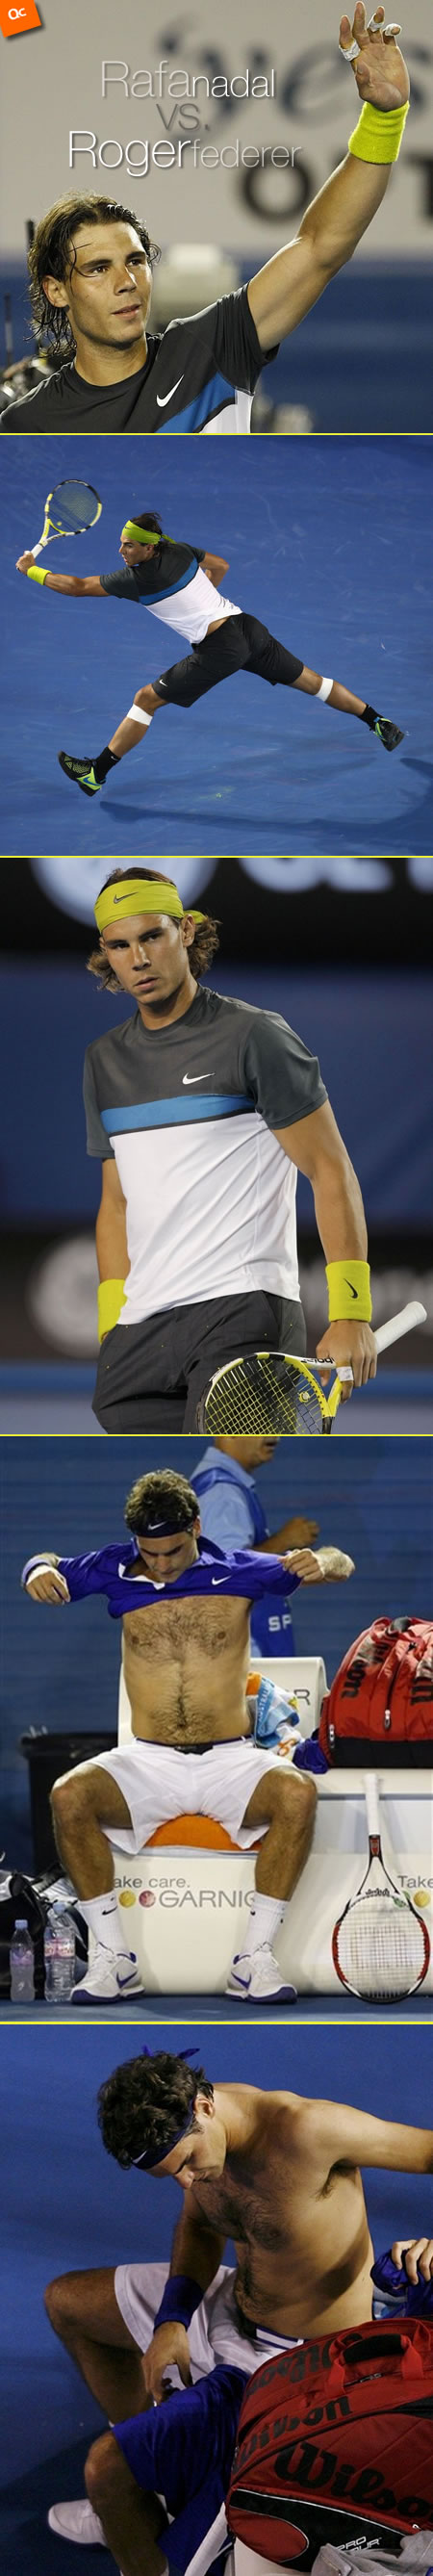 Rafael Nadal Vs. Roger Federer